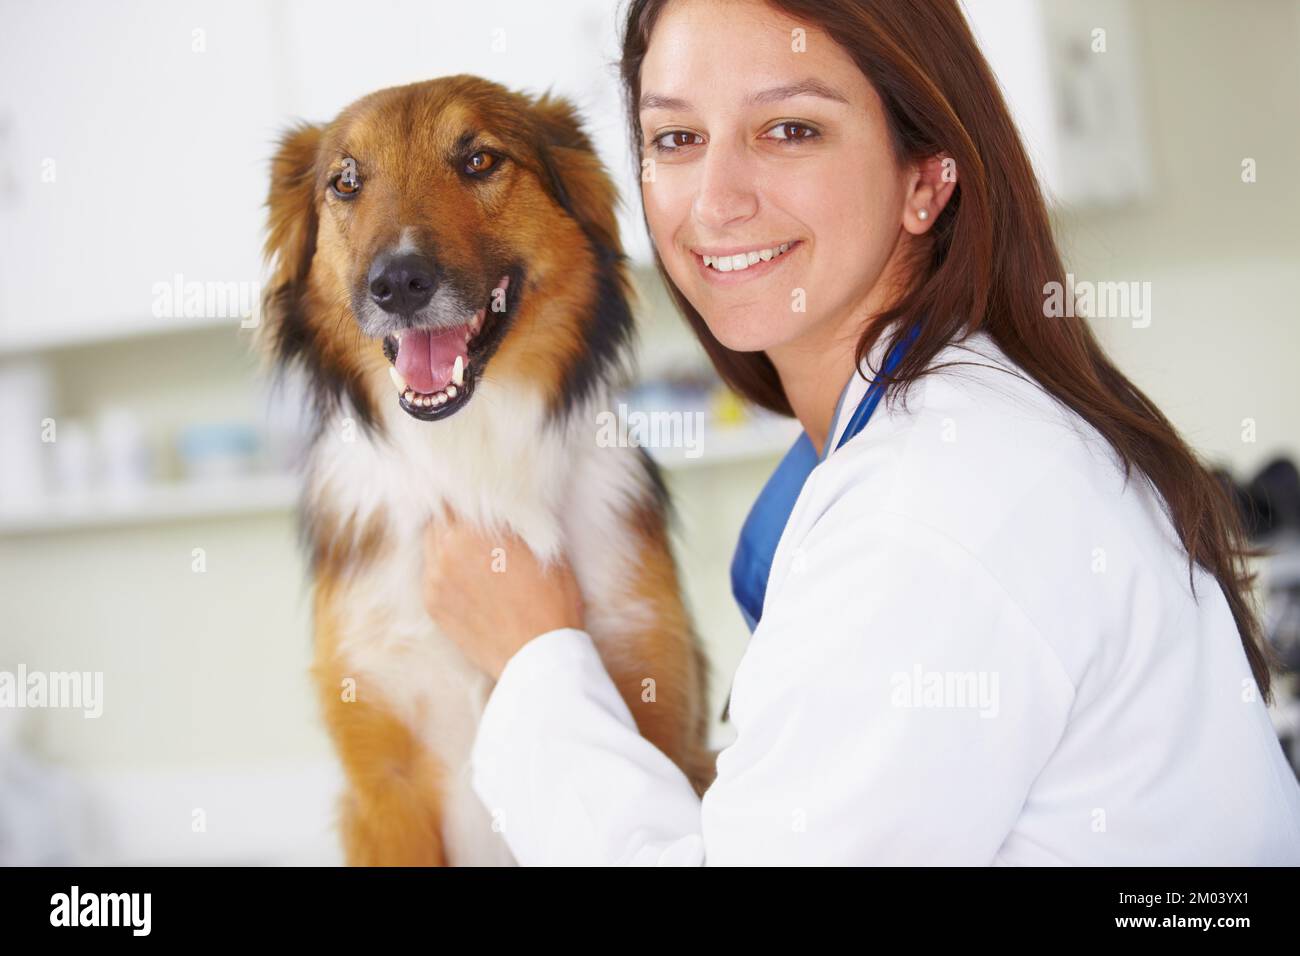 Regelmäßige Kontrolluntersuchungen sind für die Gesundheit des Hundes unerlässlich. Porträt einer lächelnden Tierärztin mit einem fröhlich aussehenden Hund. Stockfoto